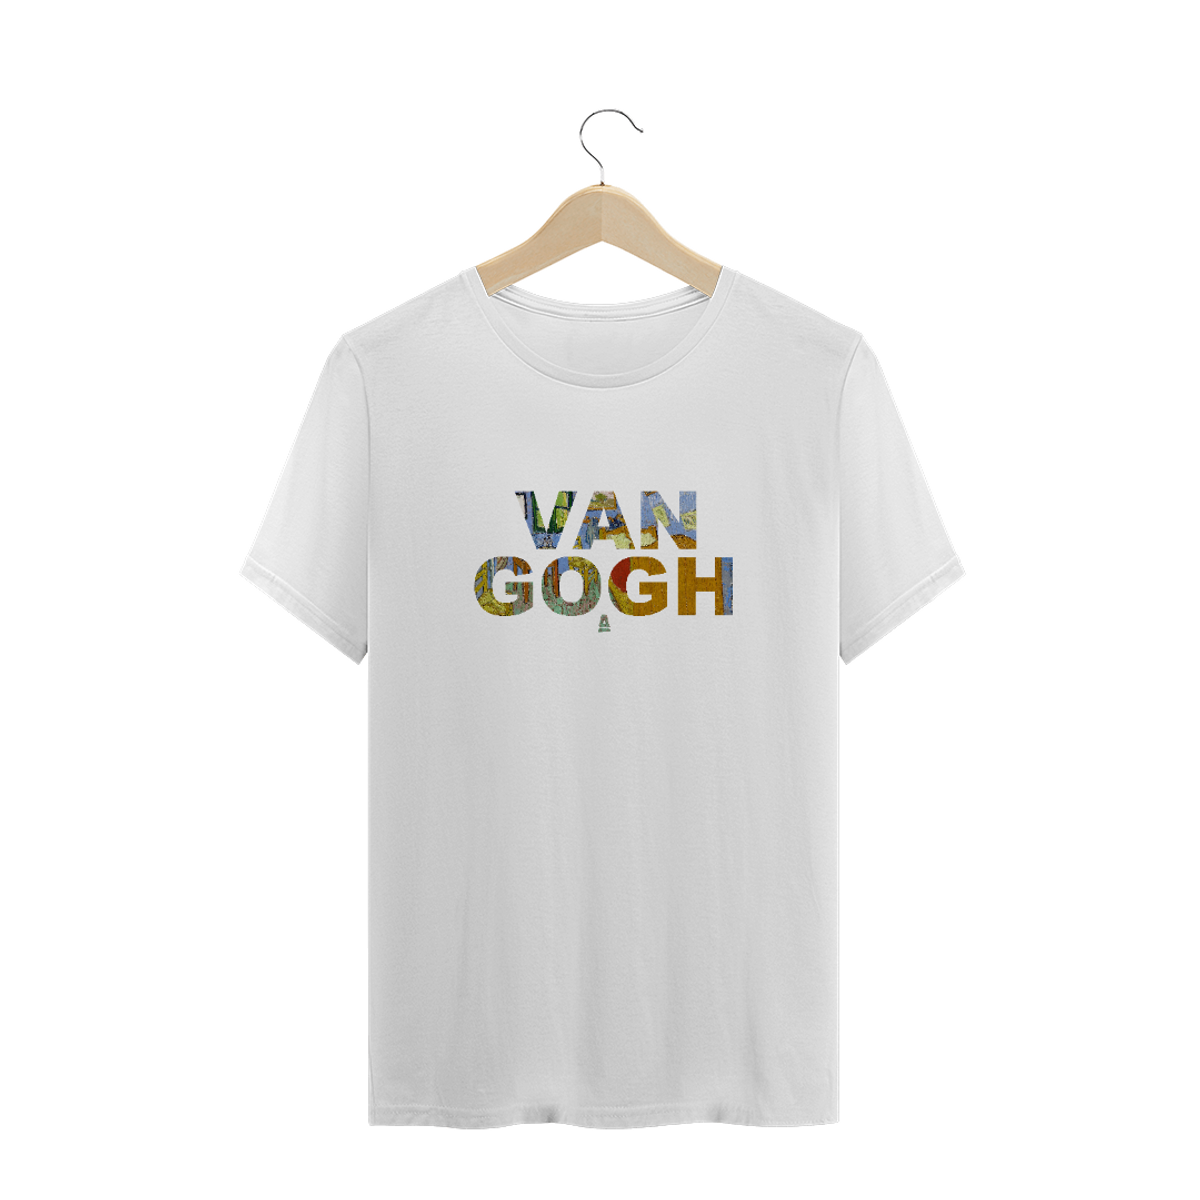 Nome do produto: Van Gogh